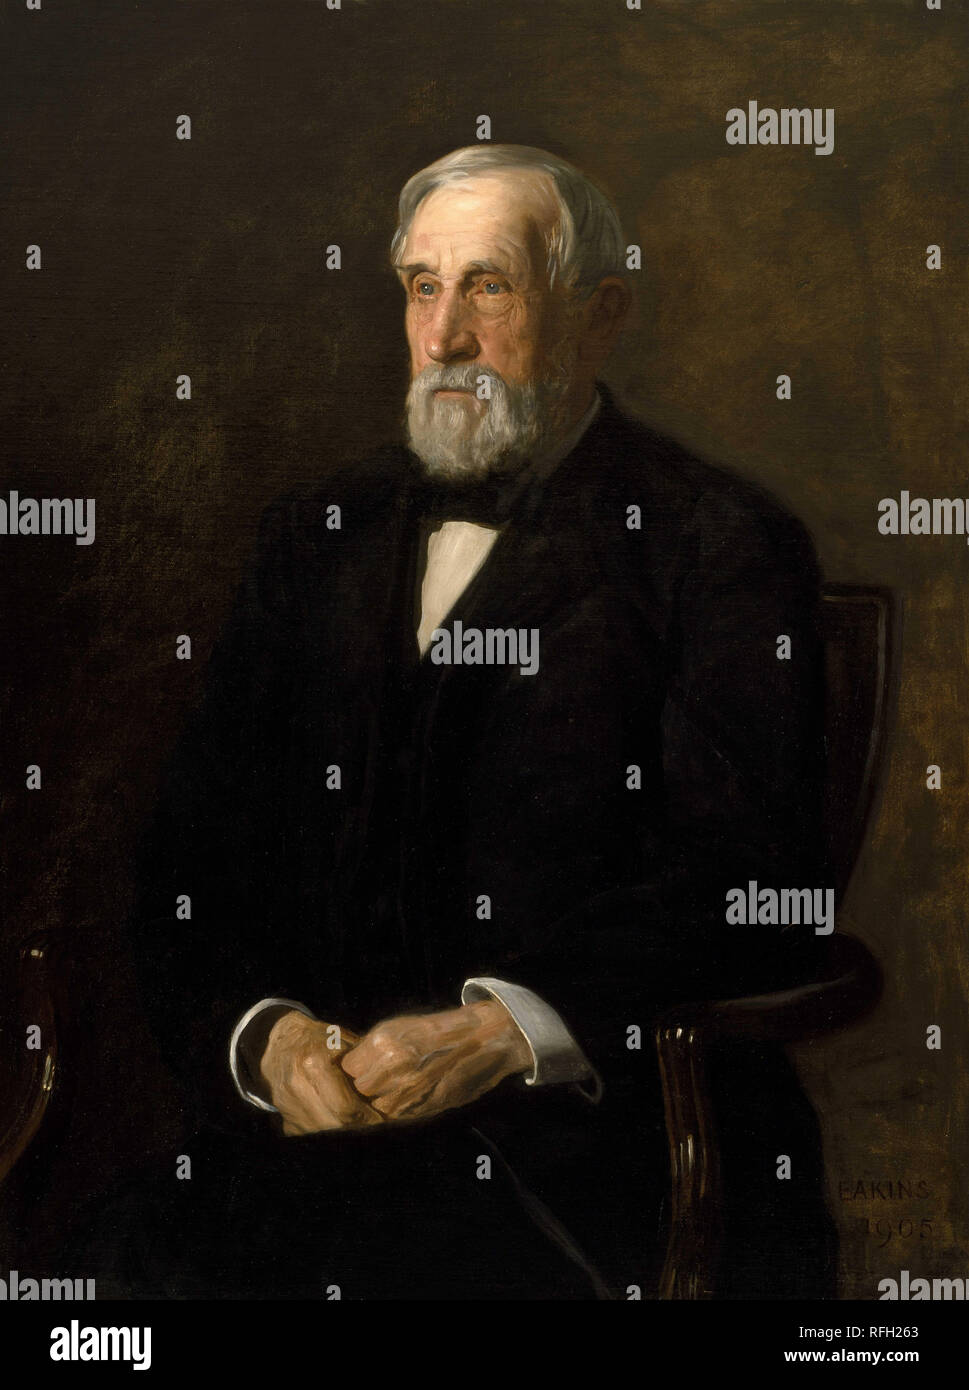 Portrait de John B. Gest. Date/période : 1905. La peinture. Huile sur toile Huile sur toile. Hauteur : 1 016 mm (40 in) ; Largeur : 762 mm (30 in). Auteur : Thomas Eakins. Banque D'Images